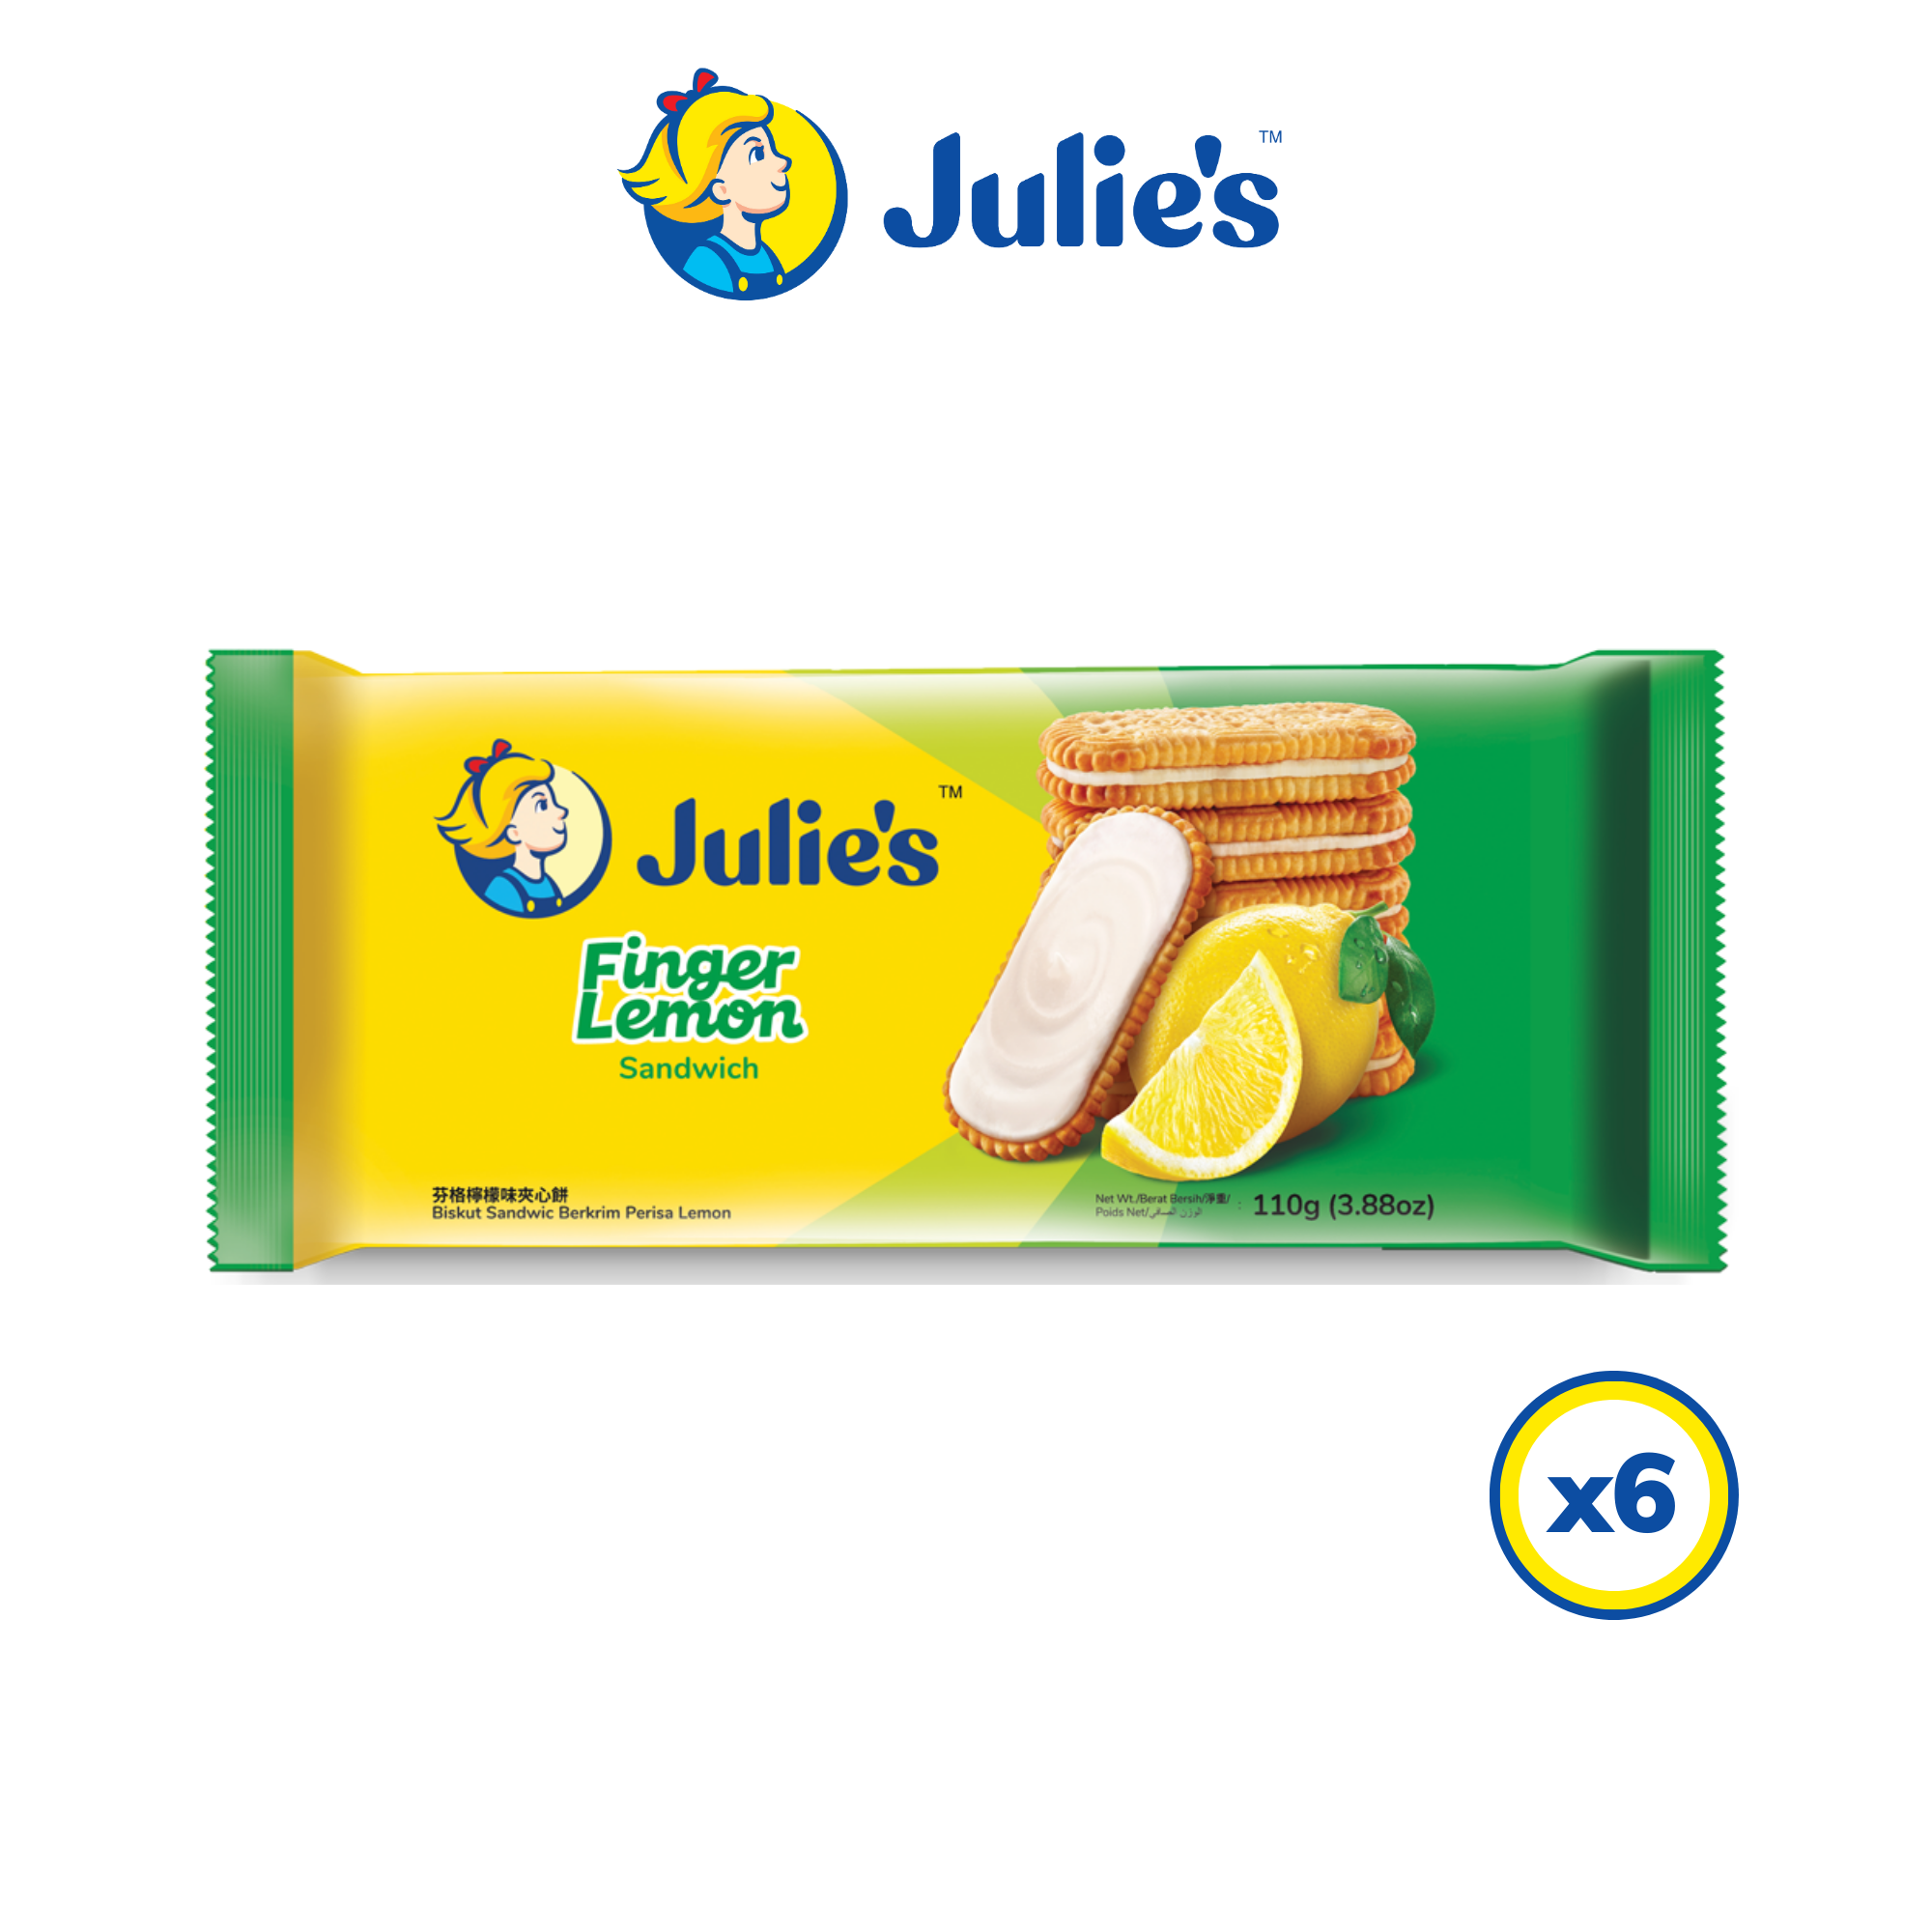 Julie\'s Finger Lemon Sandwich 110g x 6 packs